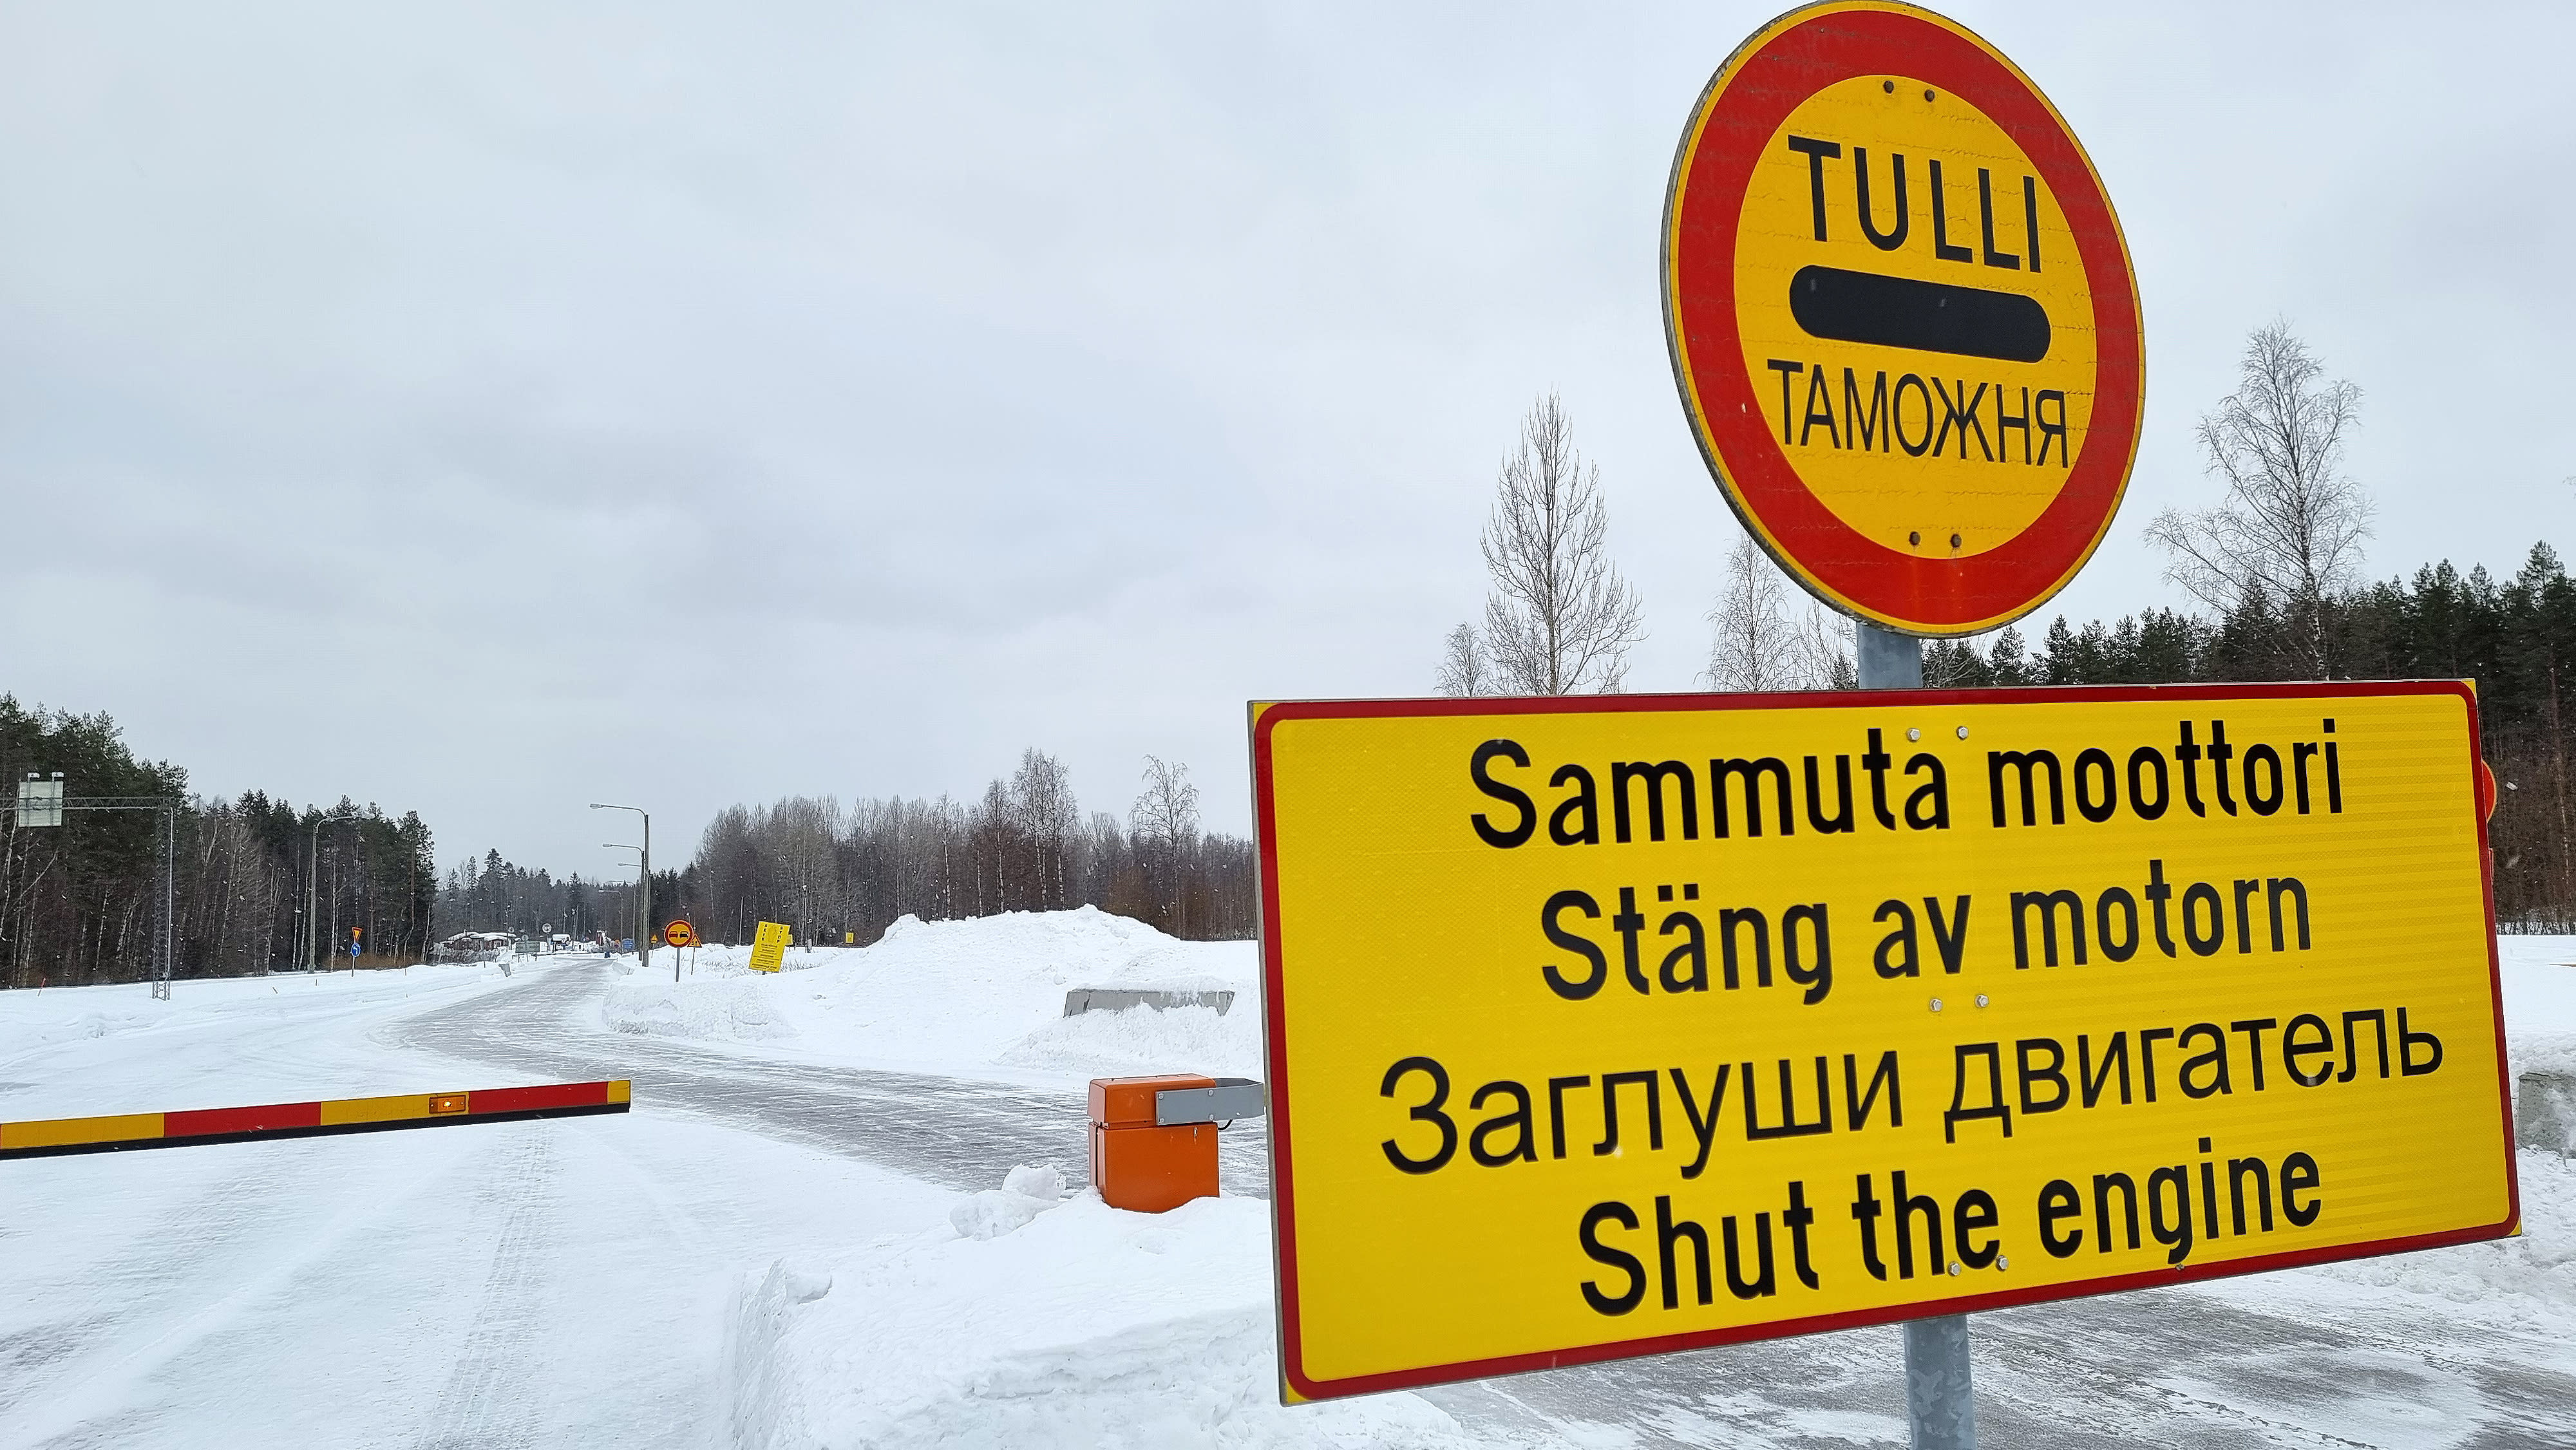 Русия проследява посещаващите финландци с помощта на IMEI кодове на смартфони, открива Yle